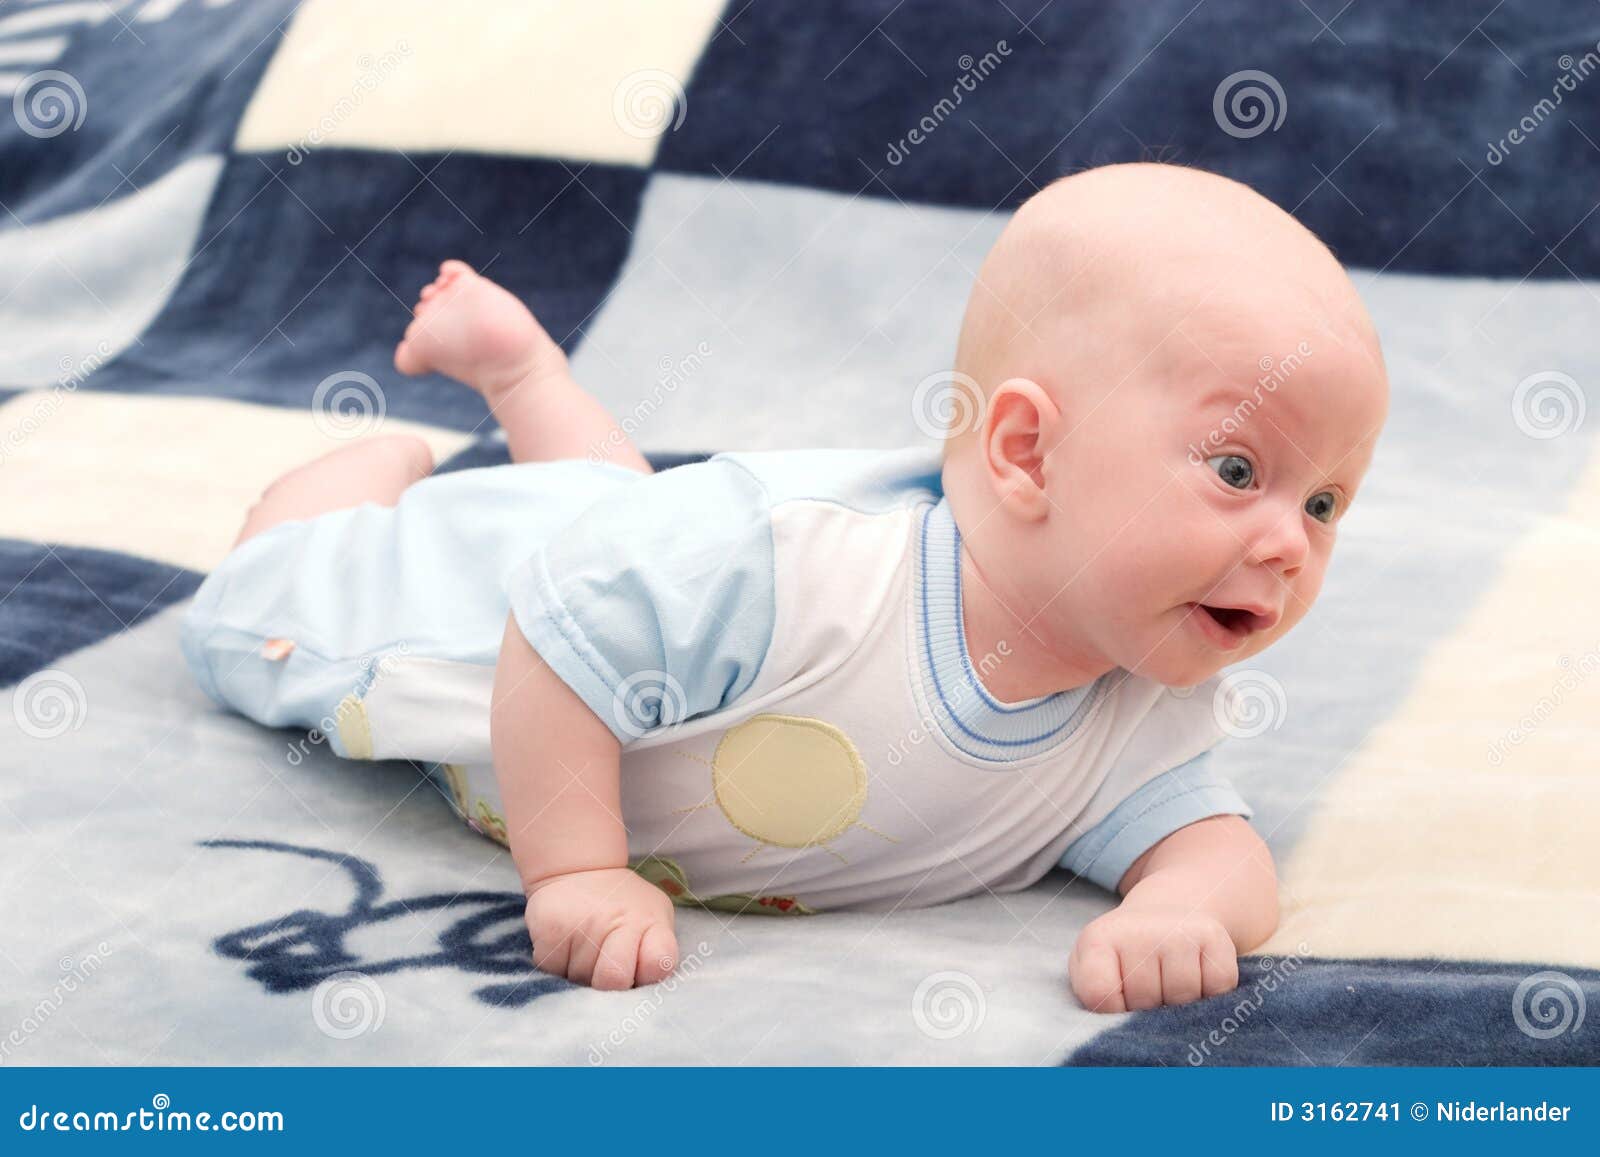 Wens alarm Blauwe plek De baby van 3 maanden stock afbeelding. Image of klein - 3162741